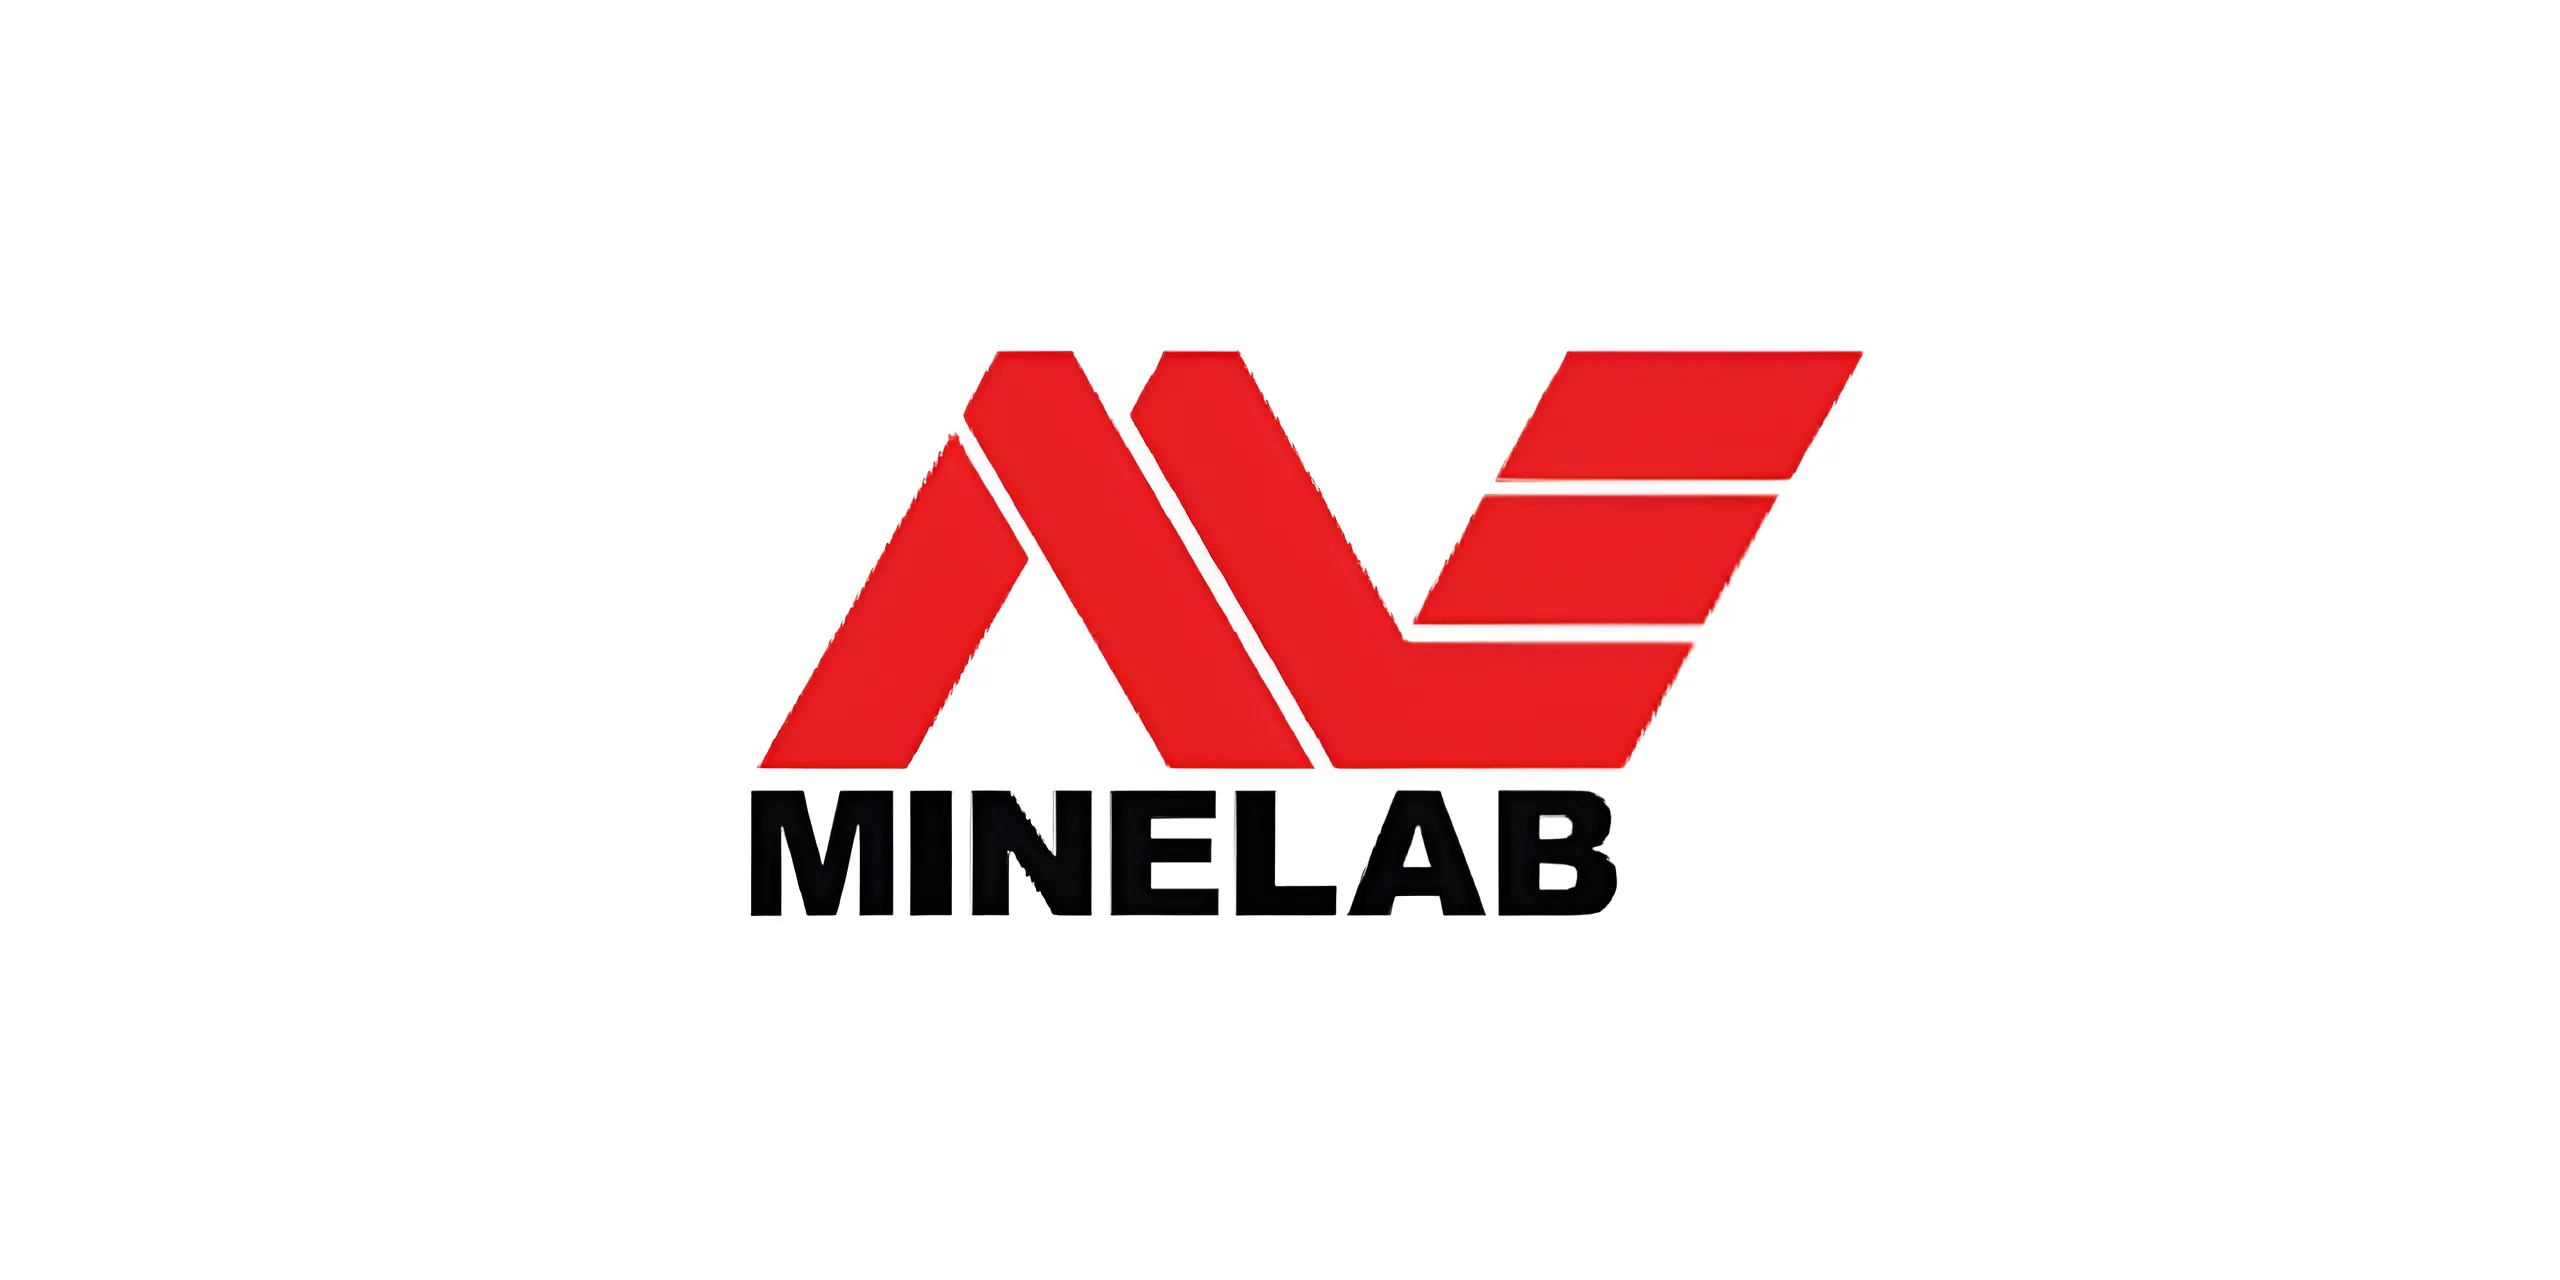 Minelab Company's LOGO